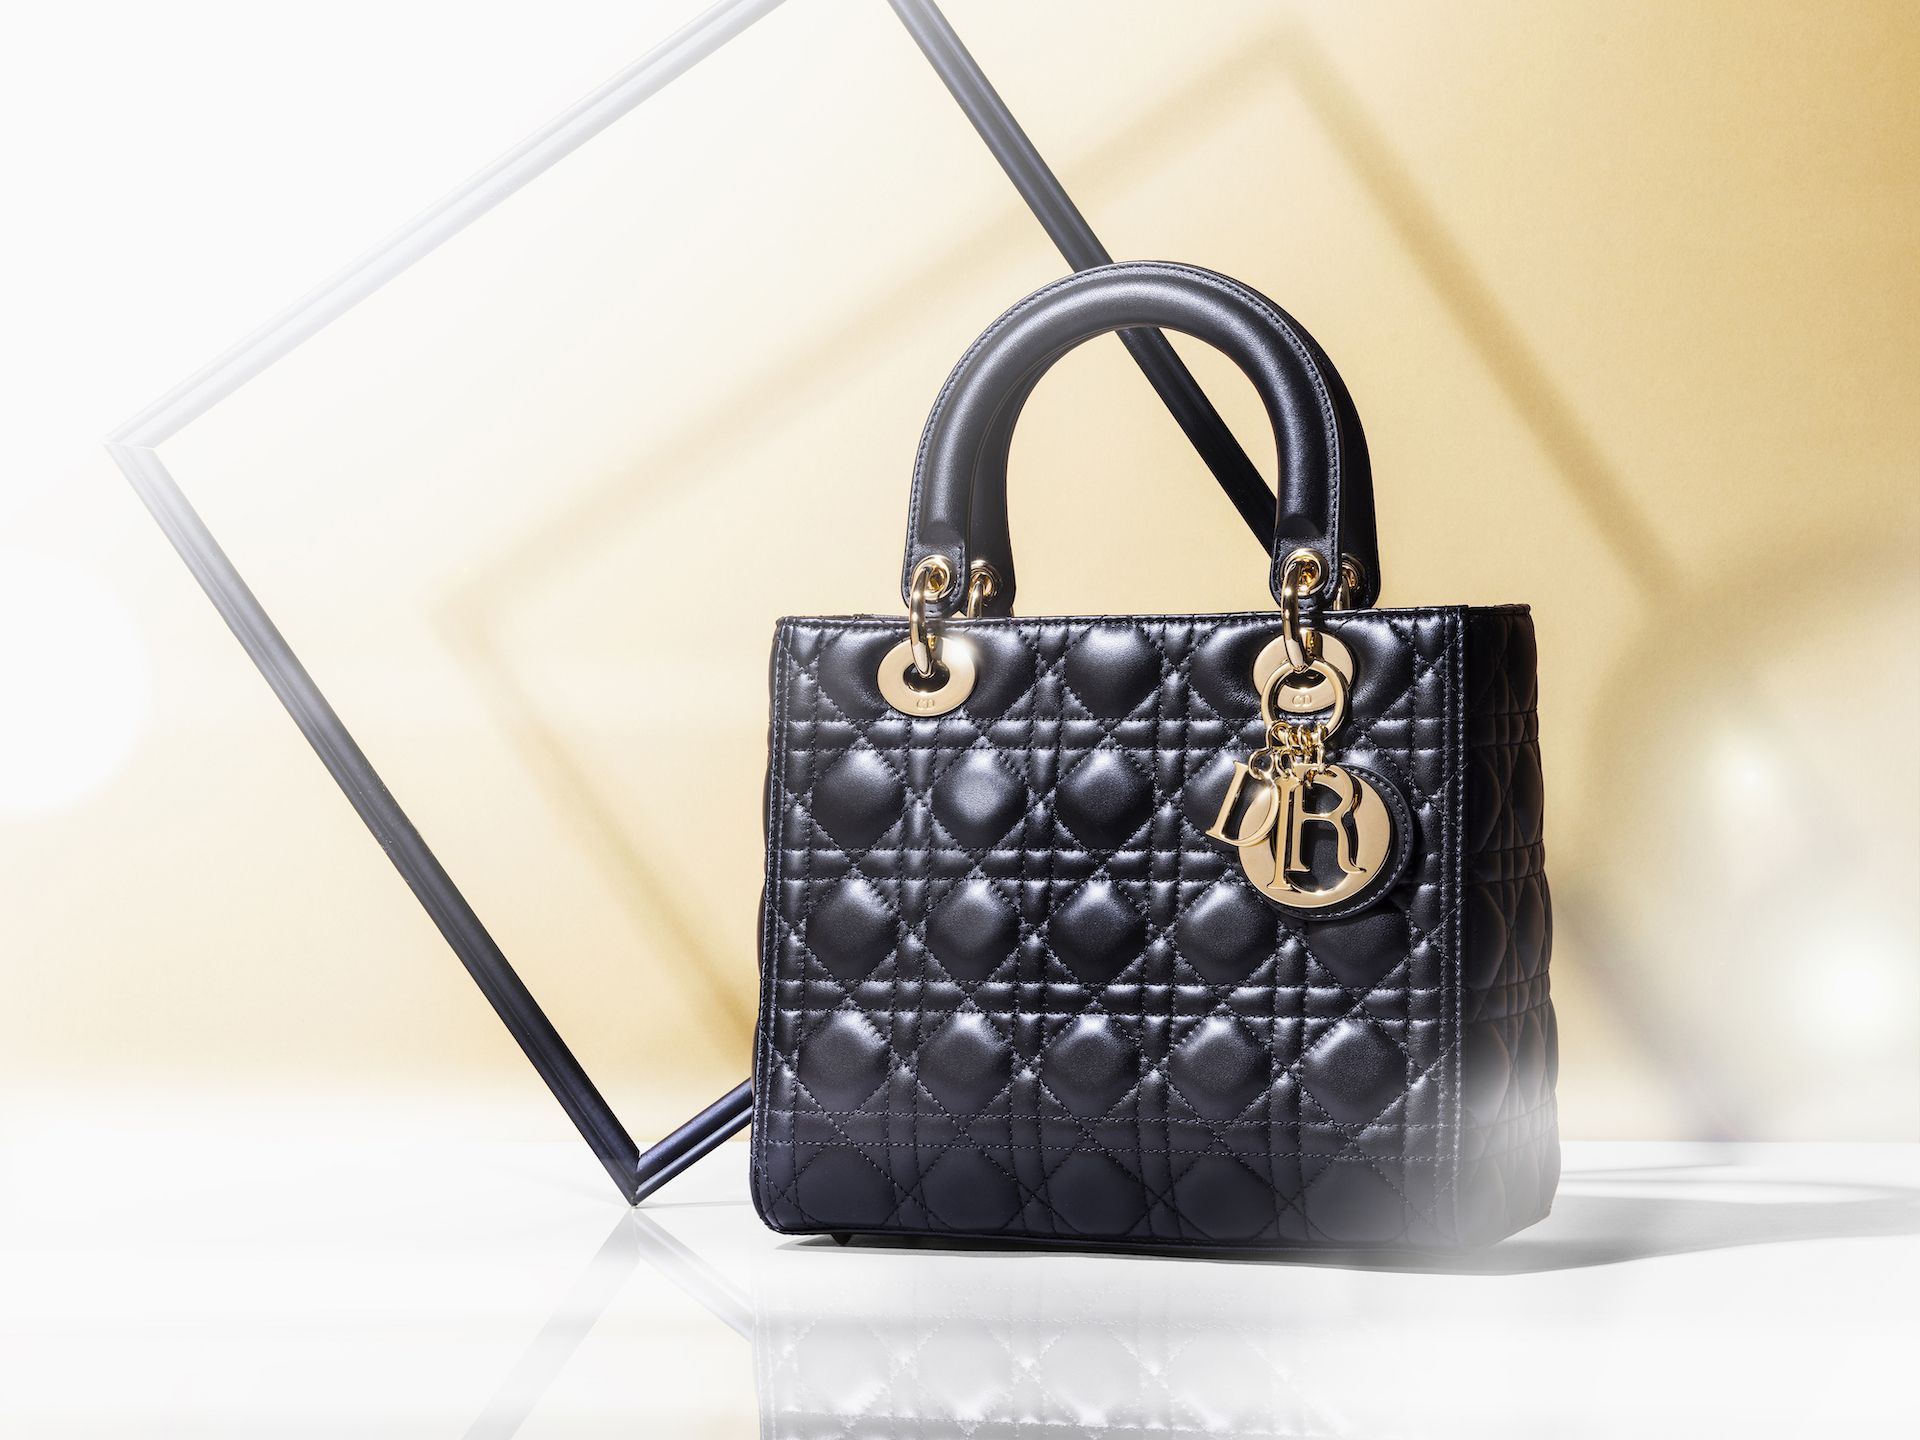 [موسوعة العلامات التجارية الفاخرة]Why the unique and unique 'Lady Dior' bag is loved by ladies all over the world The world's favorite luxury brand unveils the masterpiece (Part 1) JBpress Signature |